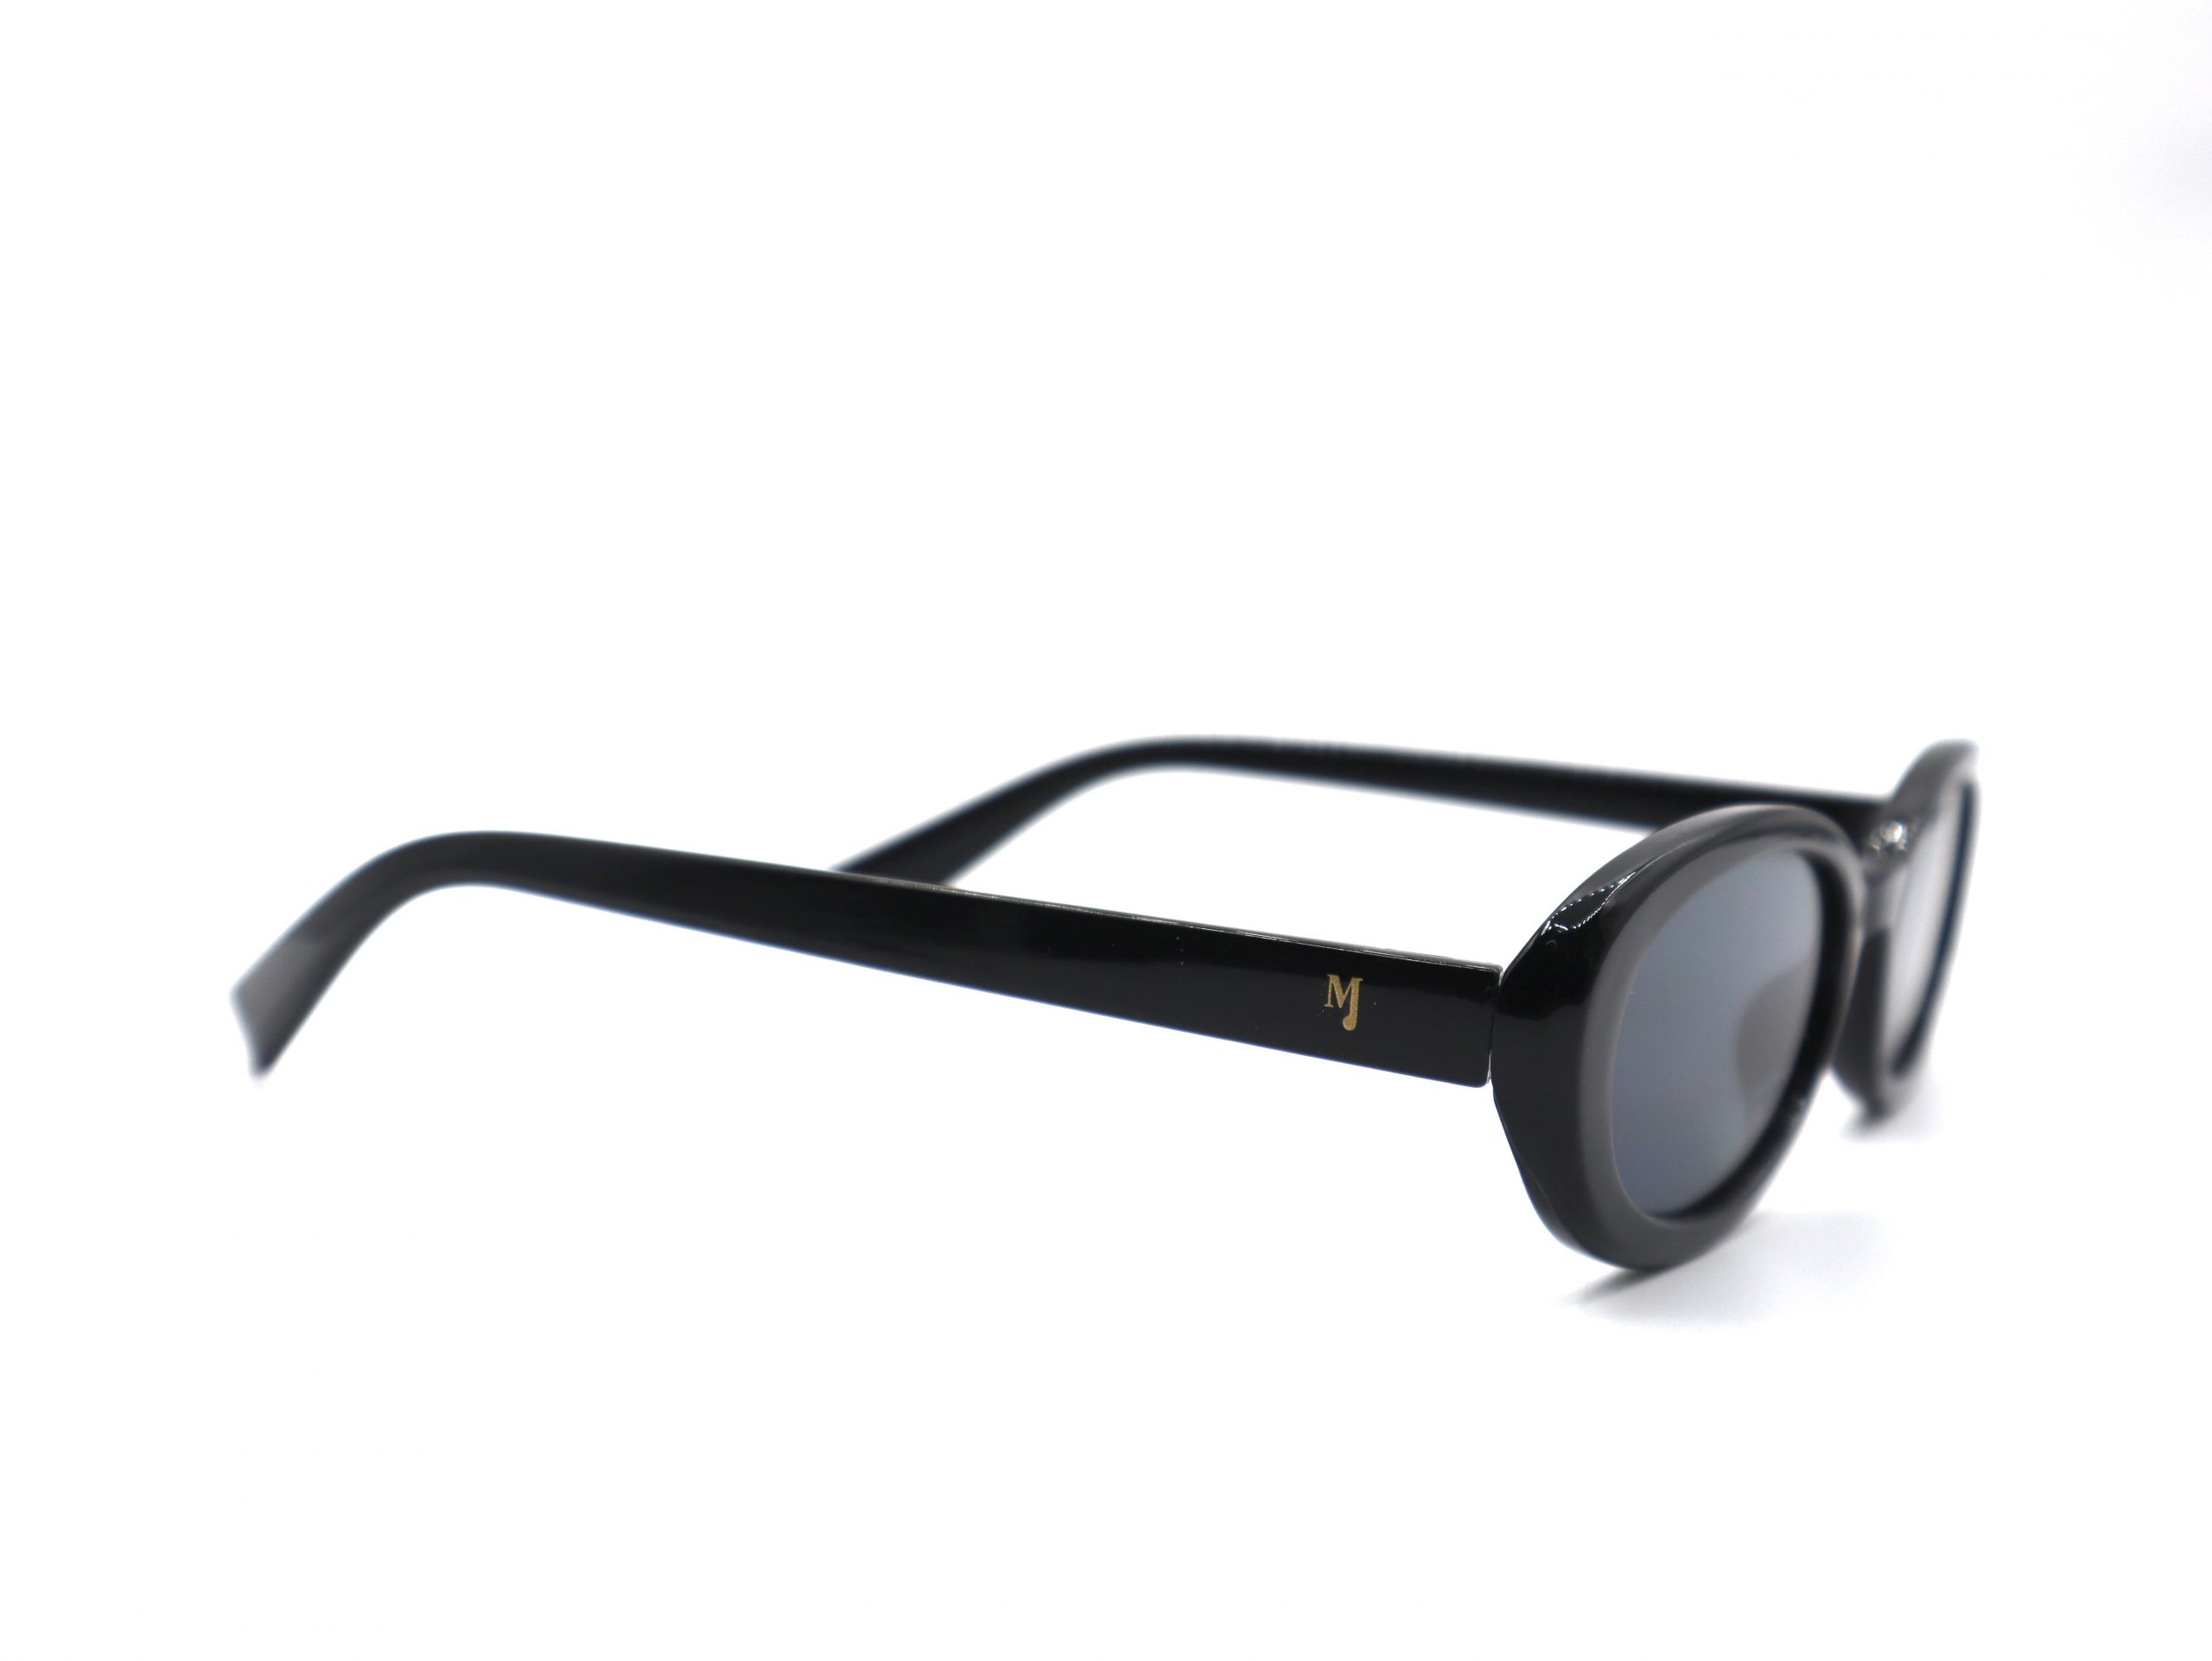 Gafas de sol Valley Black con influencia de los años 70, de Montsaint